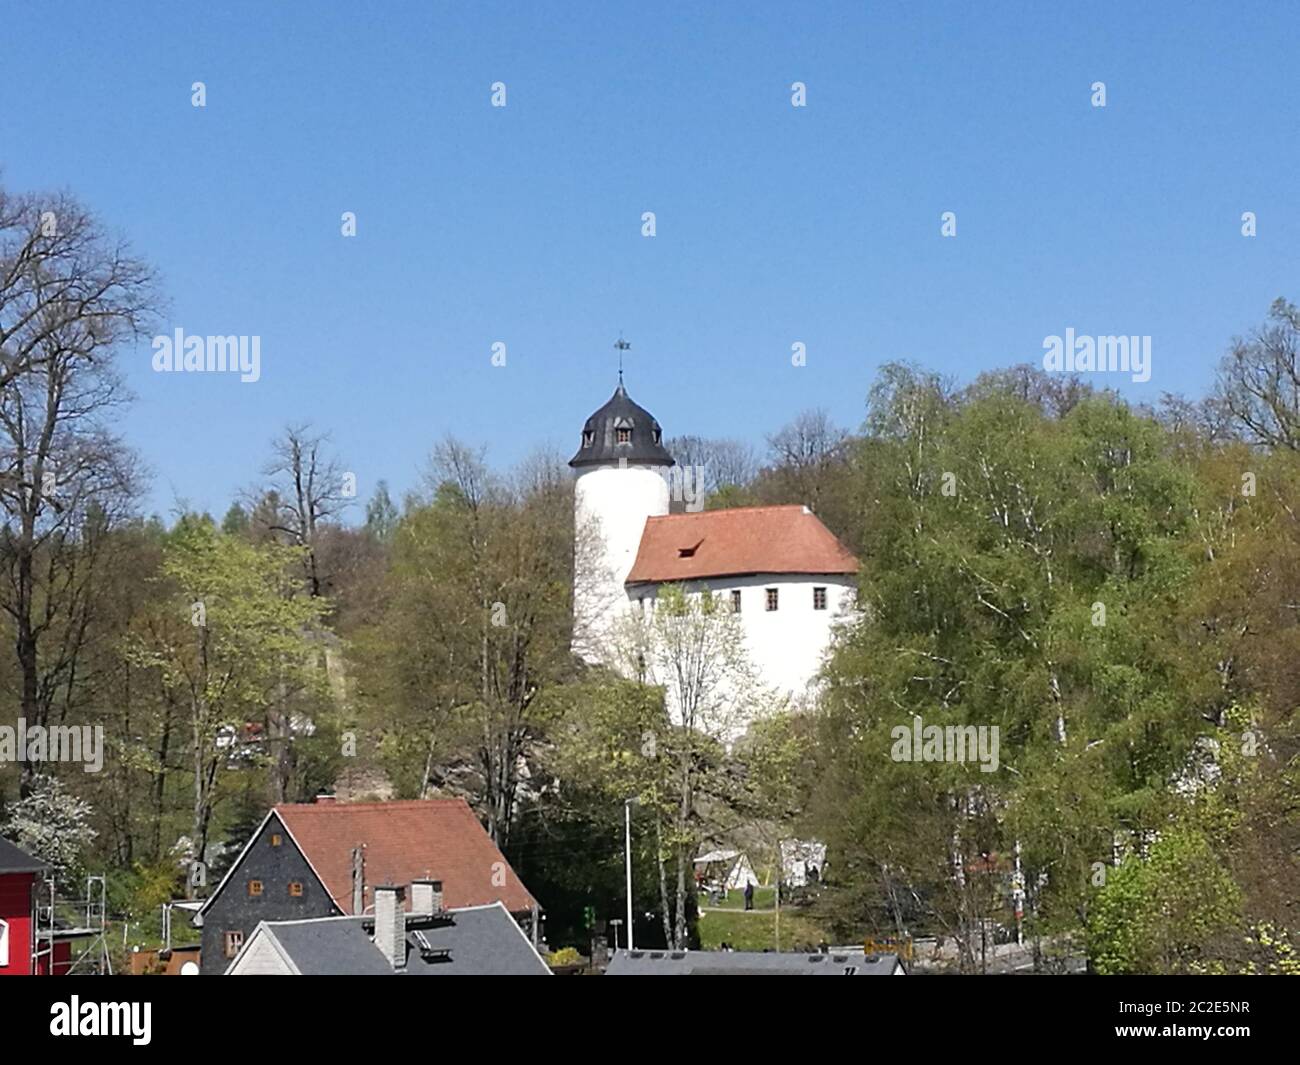 Blick über Hausdächer zur Burg Rabenstein, mittelalterliche Burganlage in Chemnitz in Sachsen, Deutschland, weiße Burganlage mit rotem Dach und einem Banque D'Images